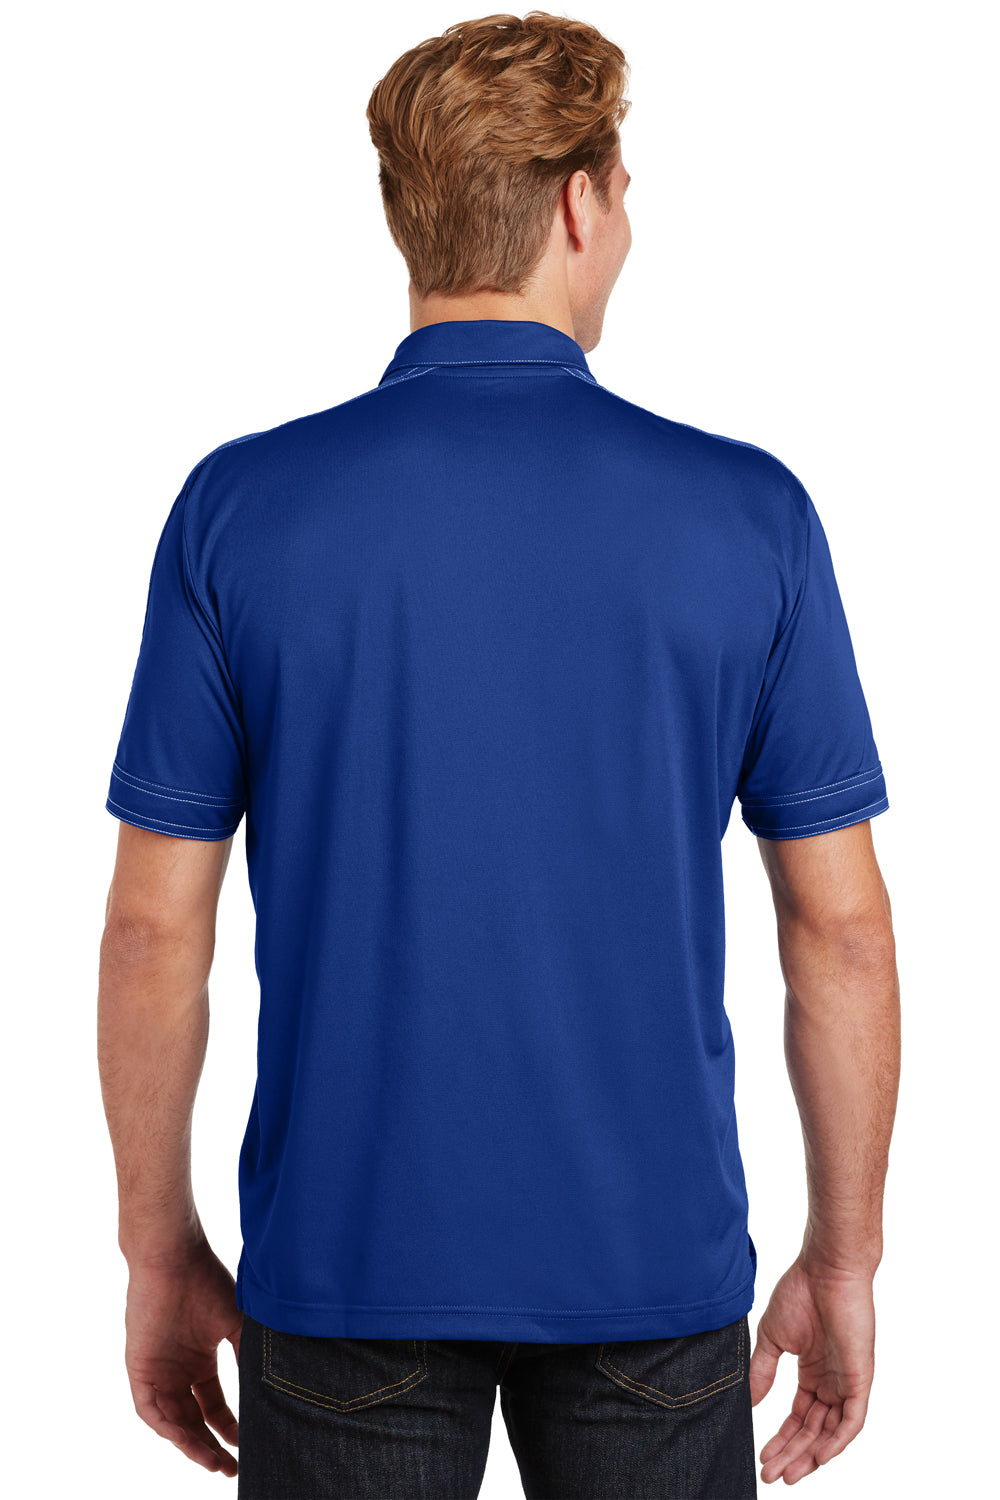 Sport-Tek ST659 Mens Sport-Wick Moisture Wicking Short Sleeve Polo Shirt Royal Blue Back